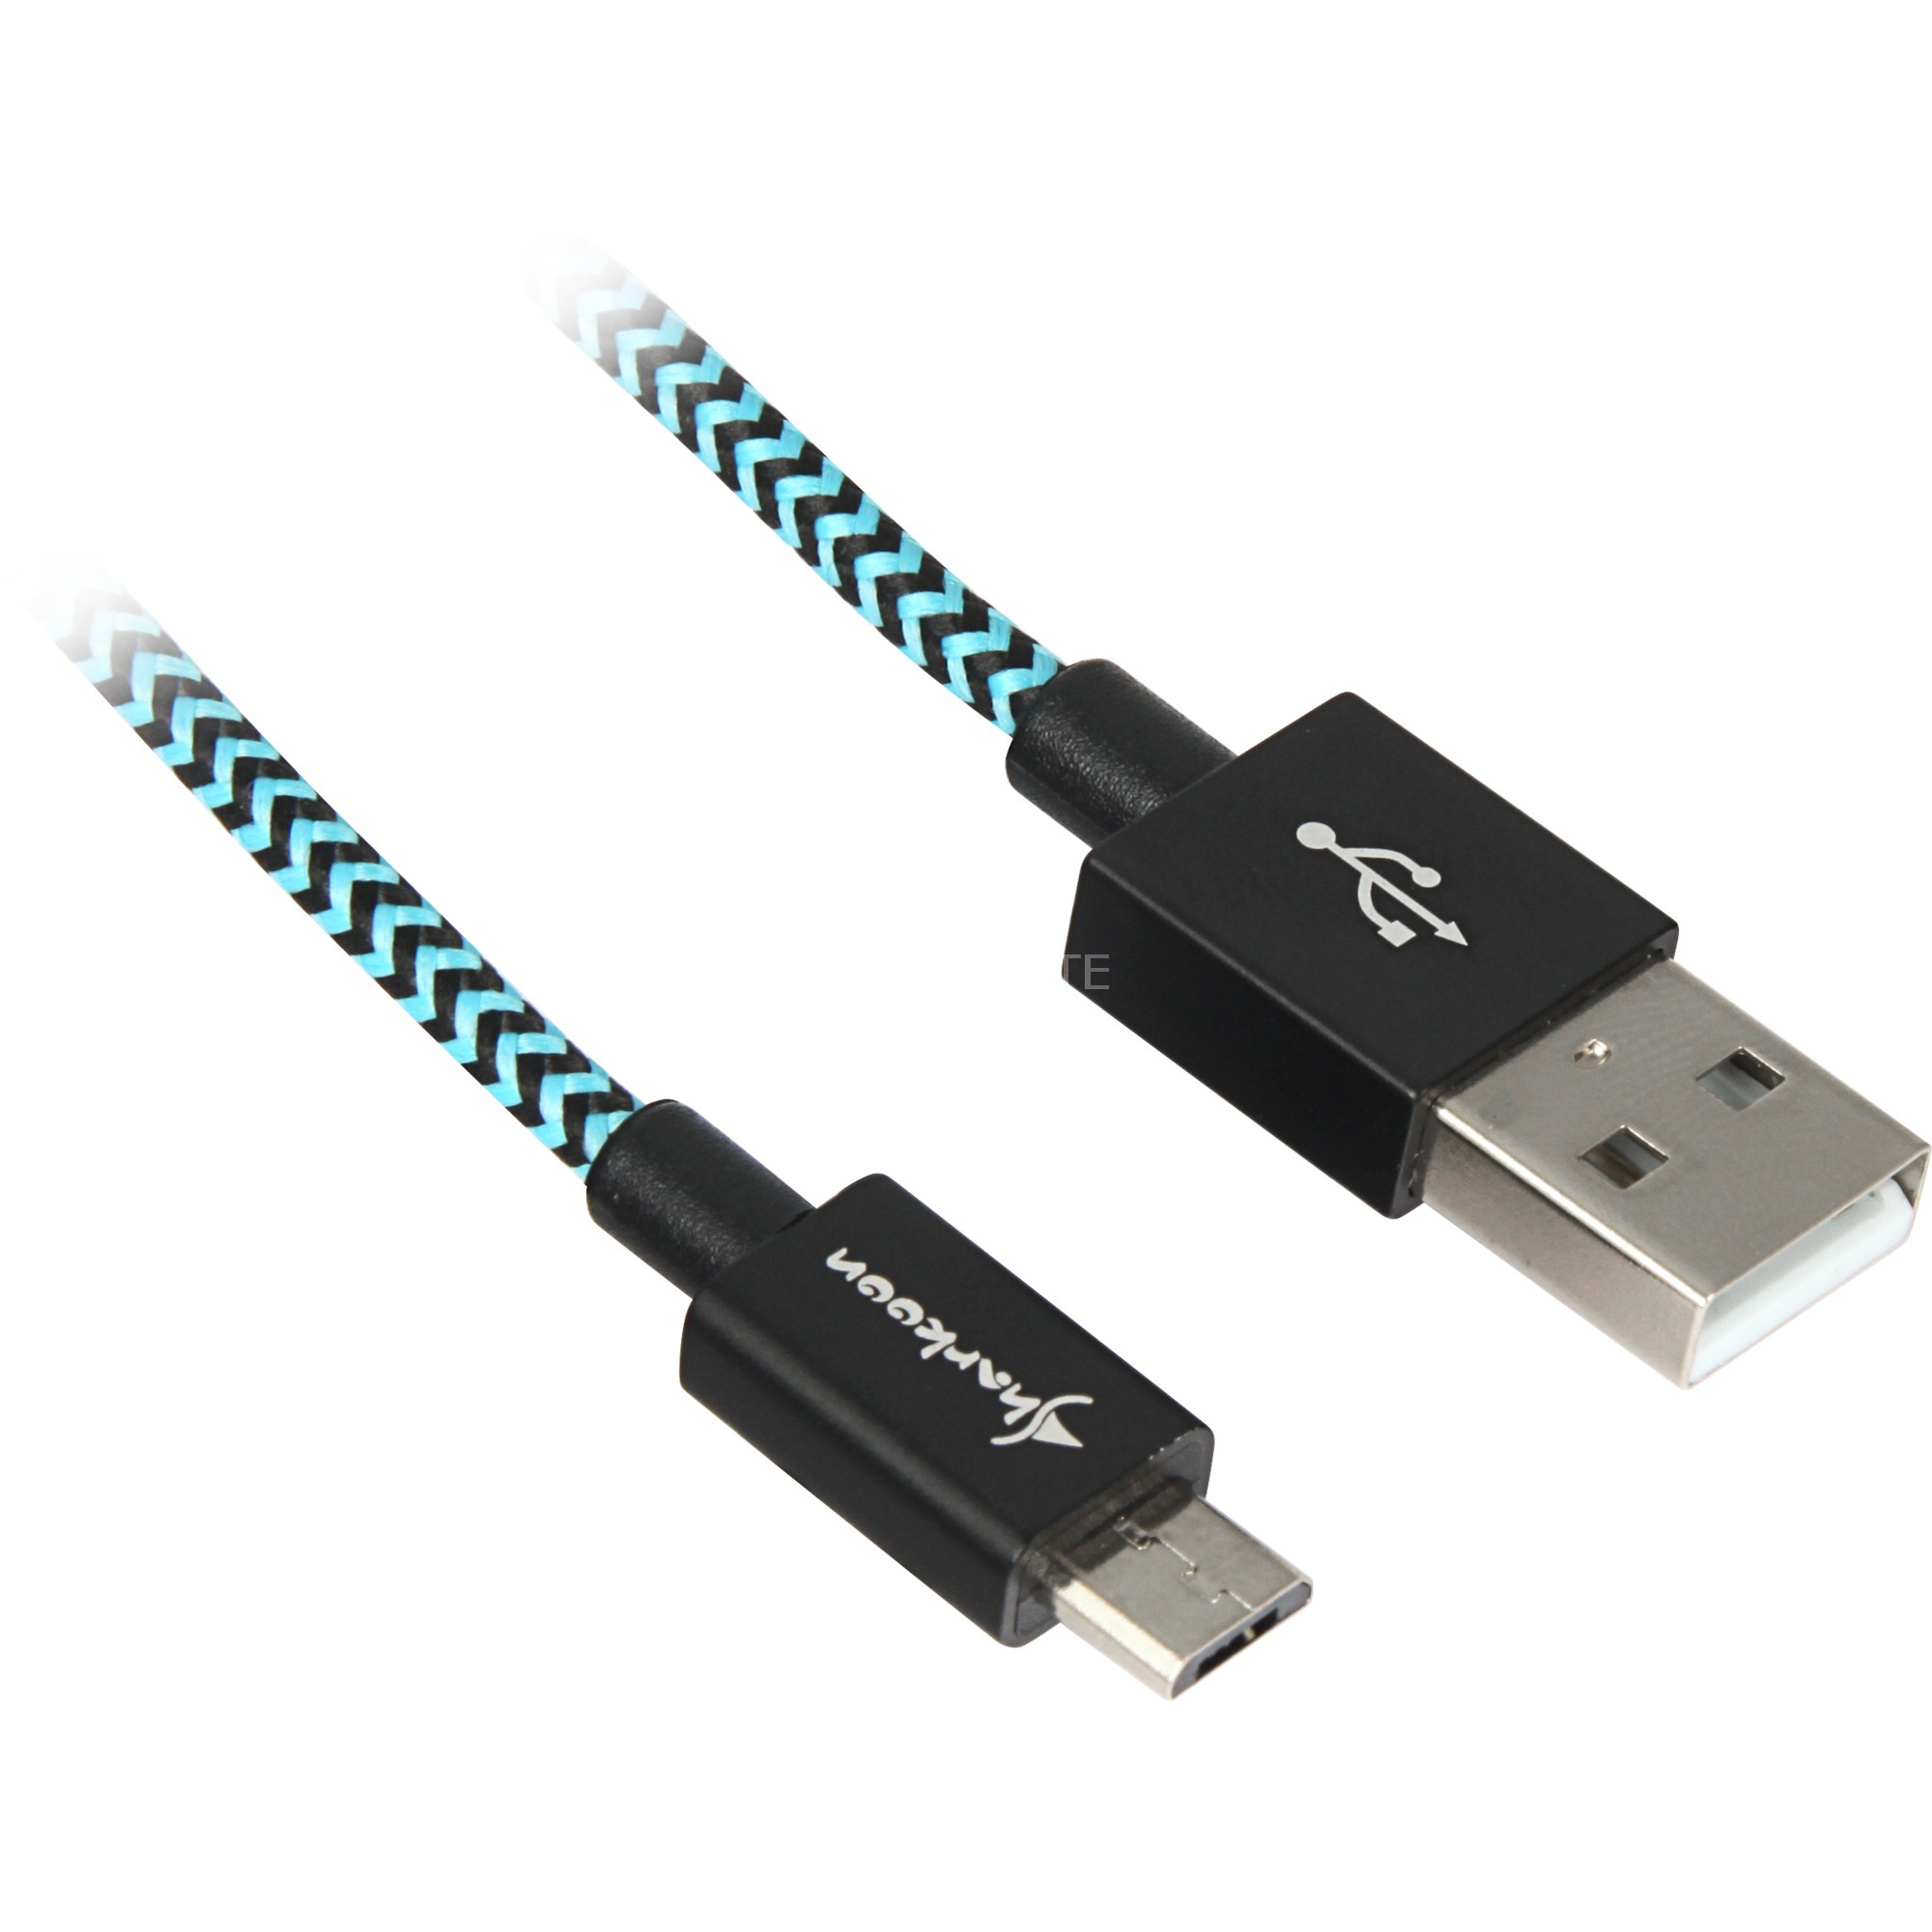 Image of Alternate - Kabel USB A 2.0 Stecker > Micro-USB Stecker (Alu + Braid) online einkaufen bei Alternate